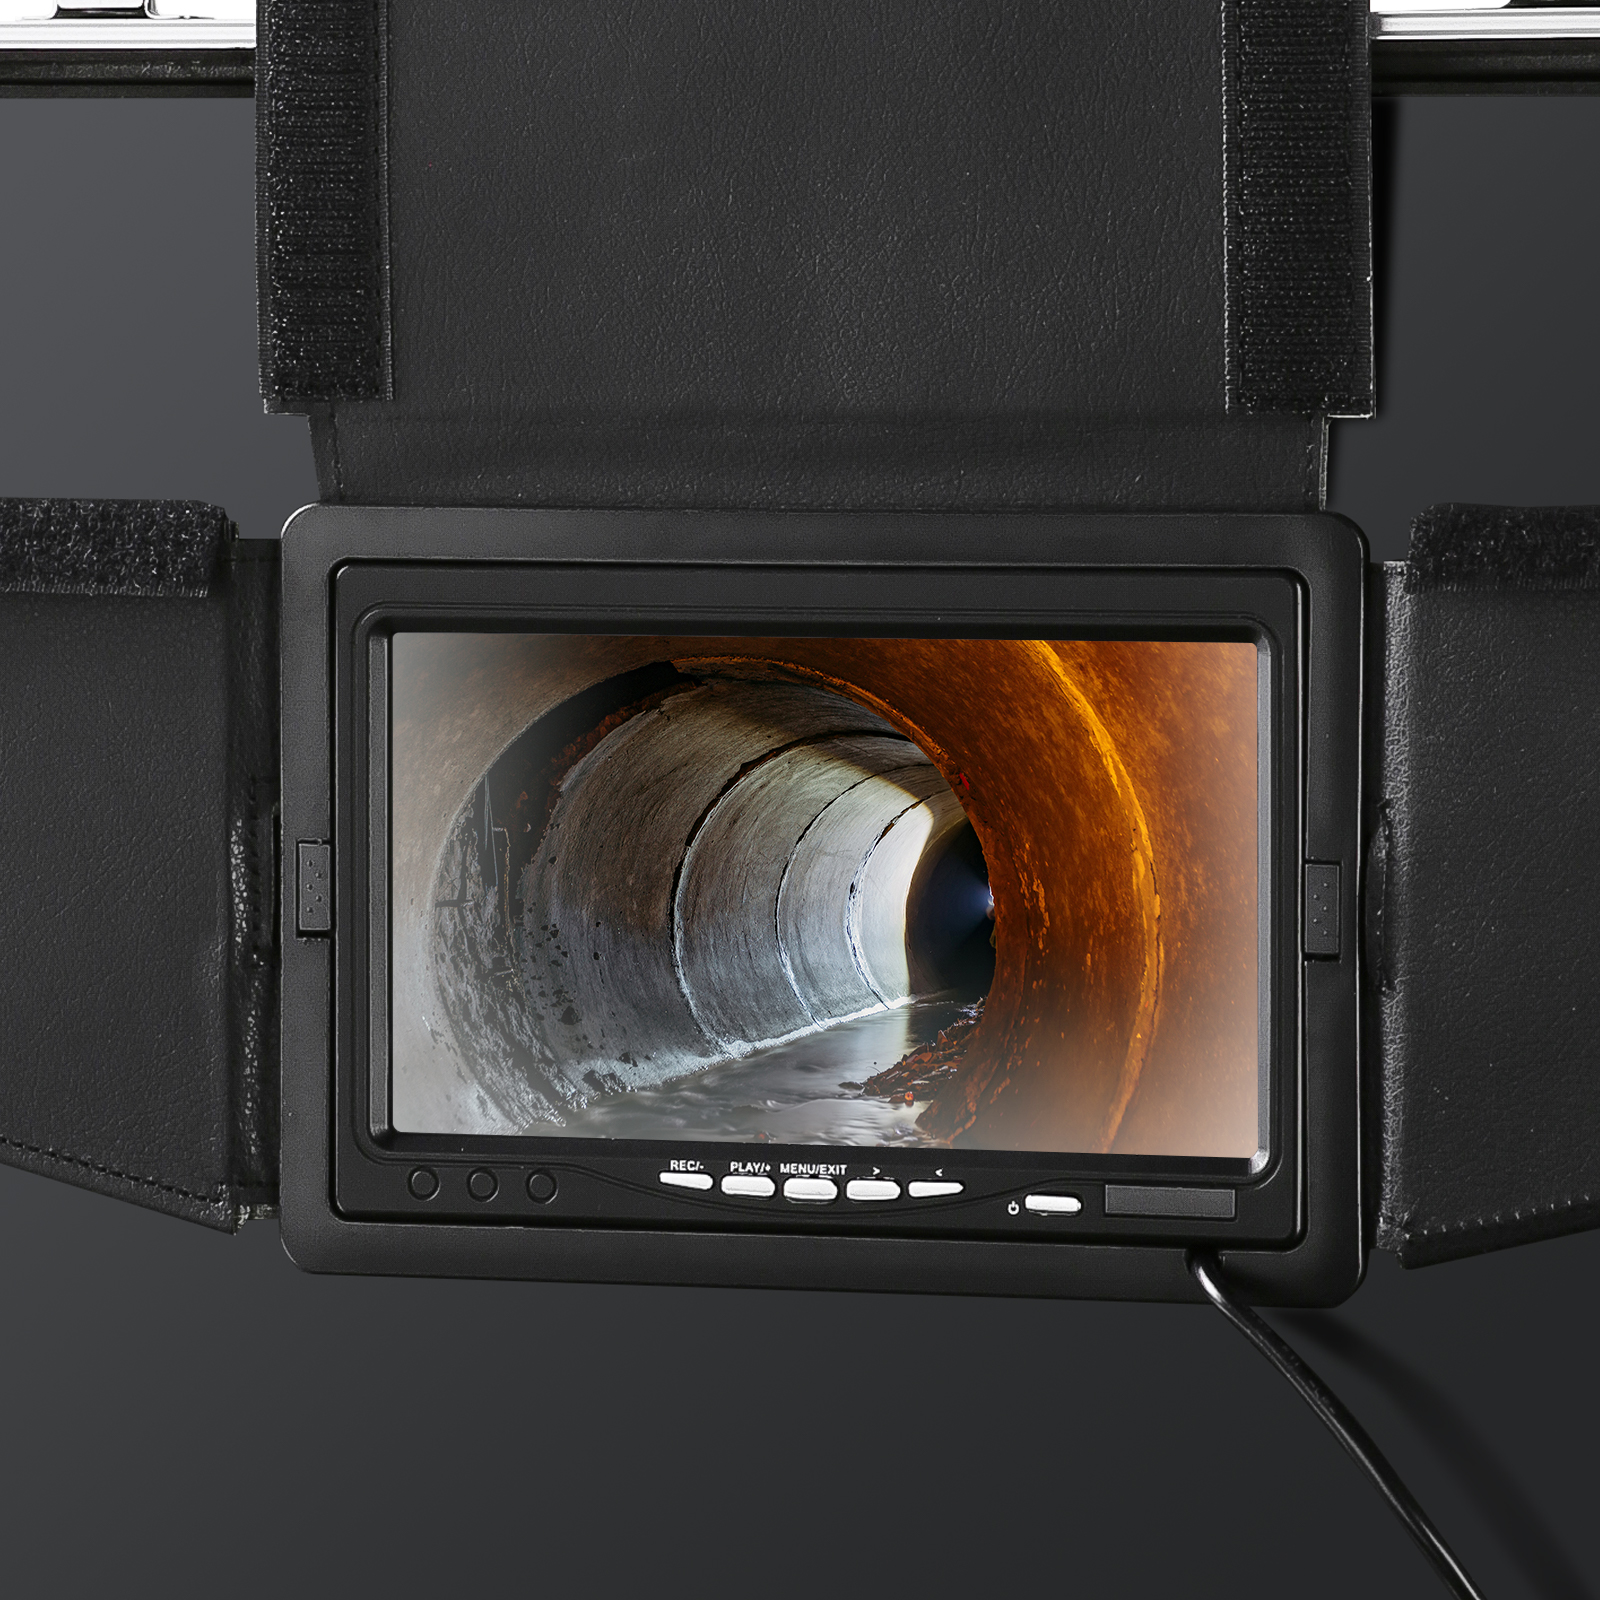 Câble de 30 m 7 pouces inspection industrielle endoscope caméra vidéo  assistance DVR Enregistrement caméra rotative à 360 degrés - Chine Caméra  de tuyauterie, caméra d'inspection